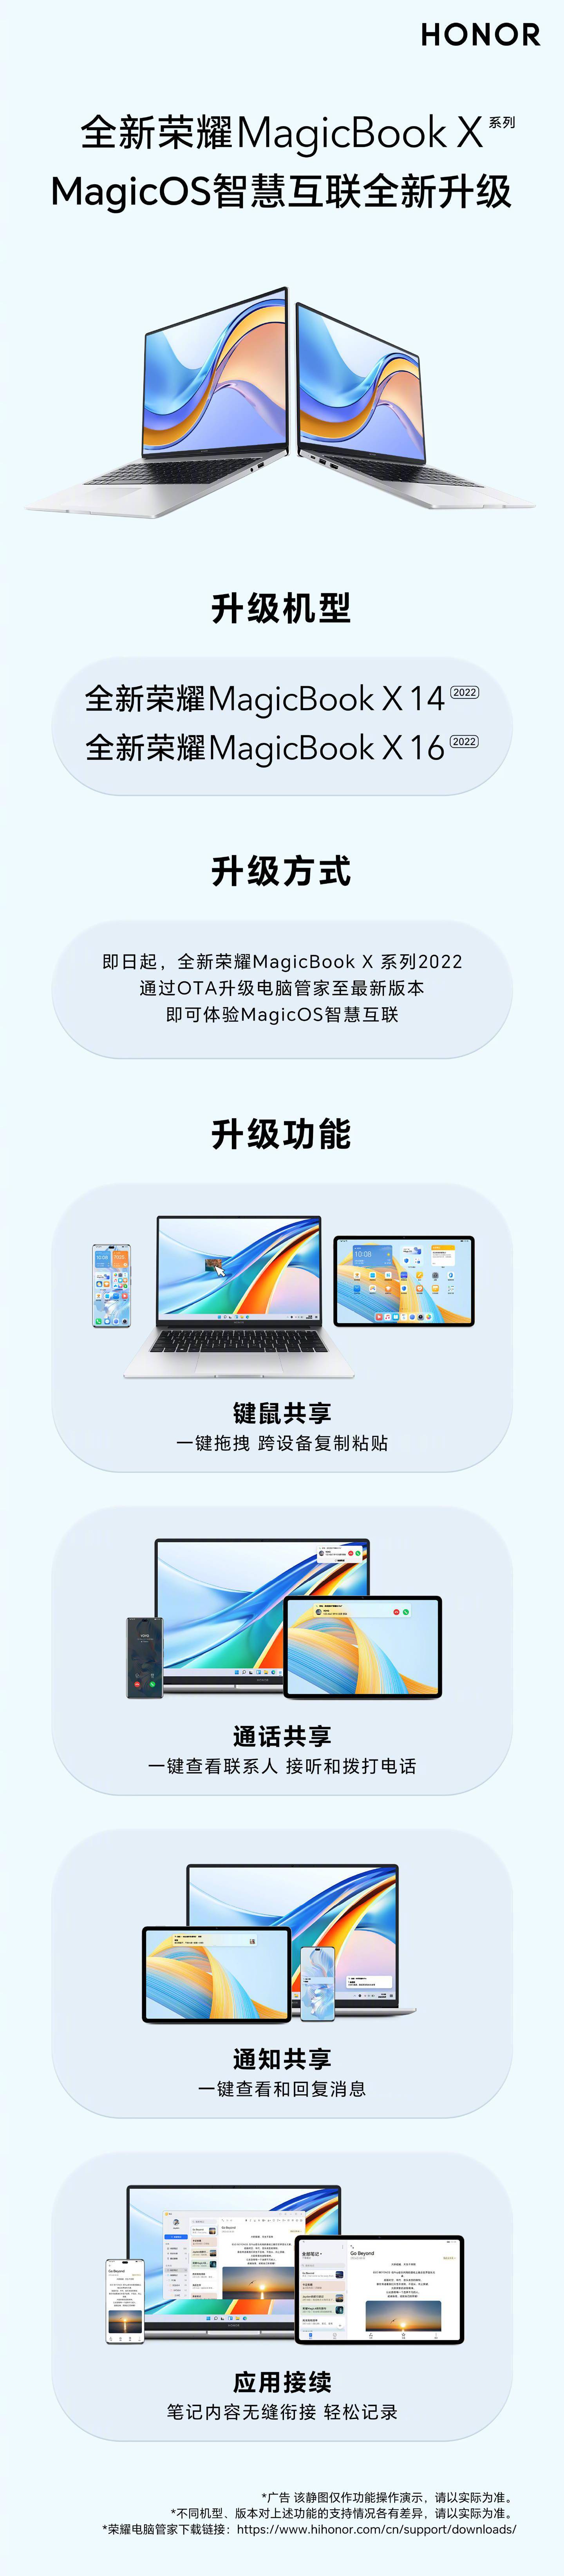 荣耀 MagicBook X 系列 2022 支持在线升级键鼠共享等功能